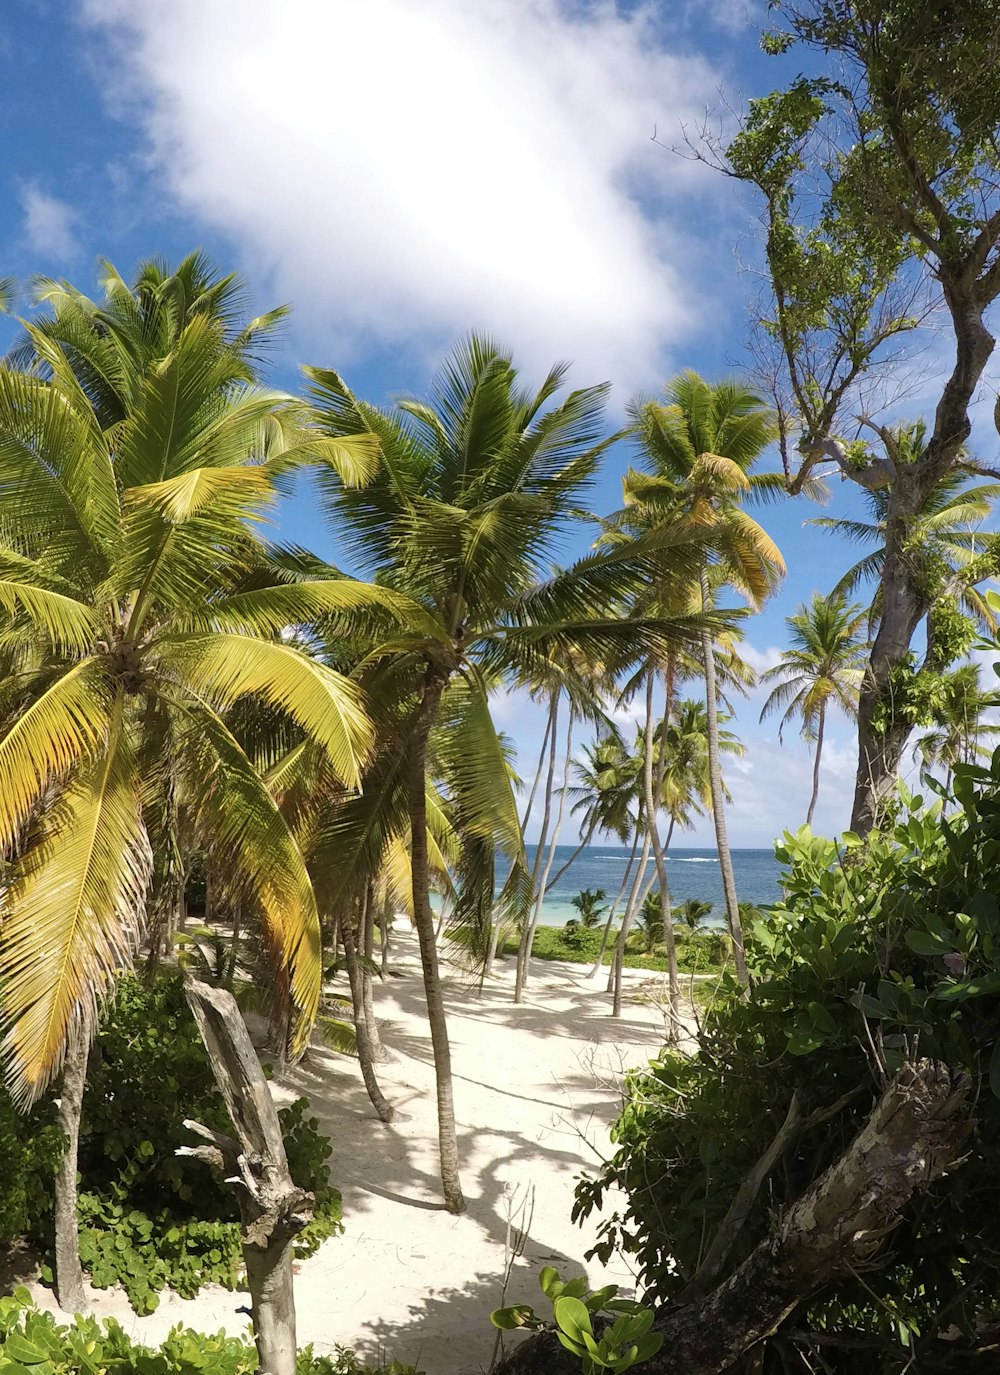 palmeiras verdes na praia de areia branca durante o dia